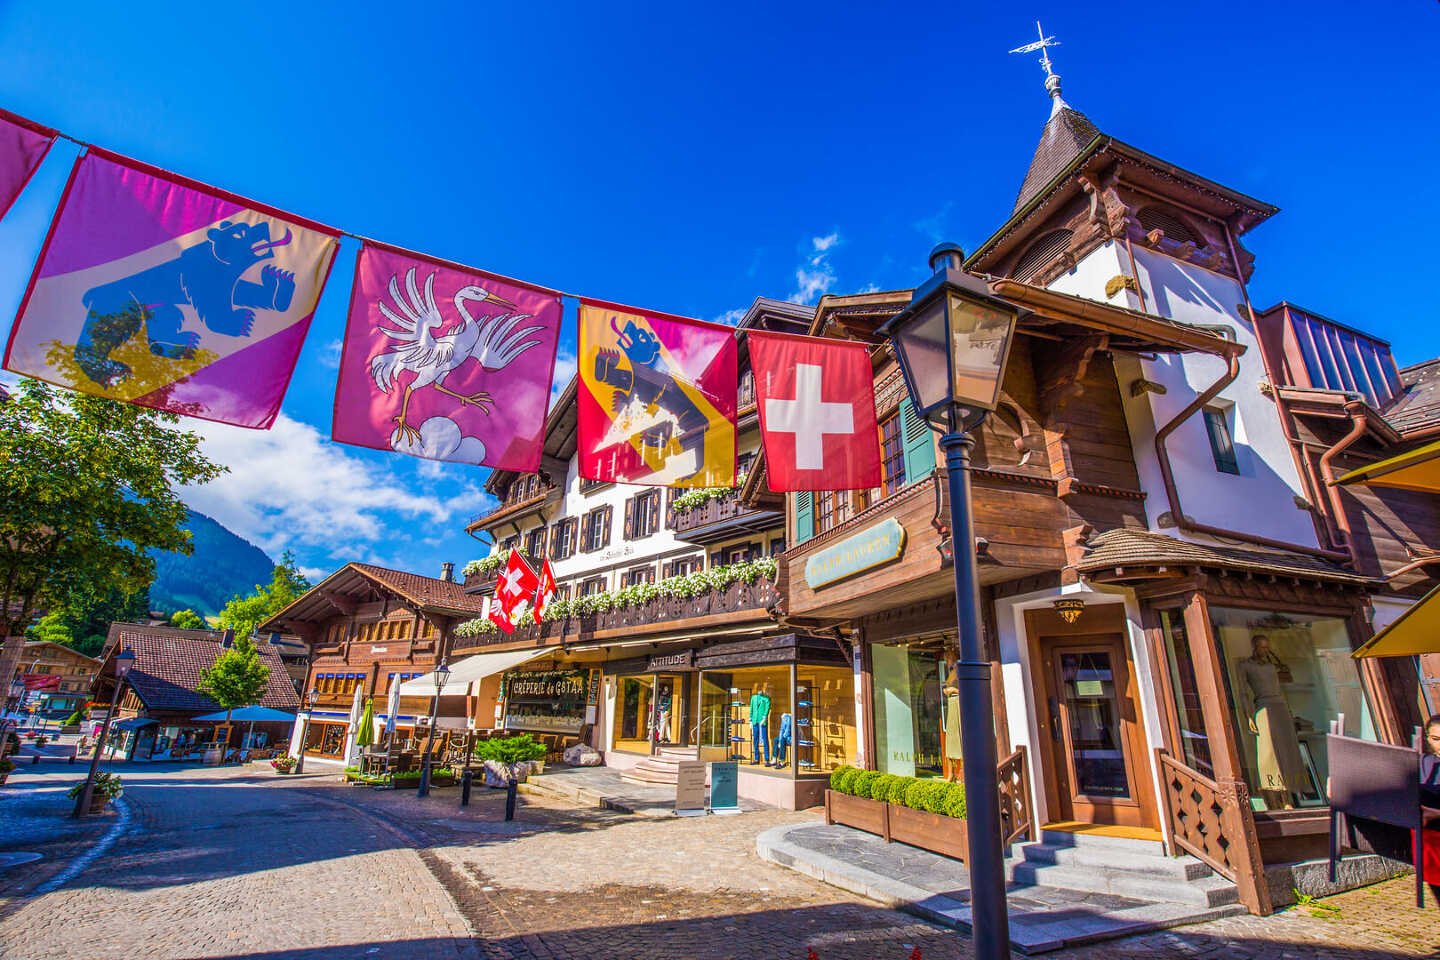 Rue pietonne dans le village de montagne de Gstaad, en Suisse